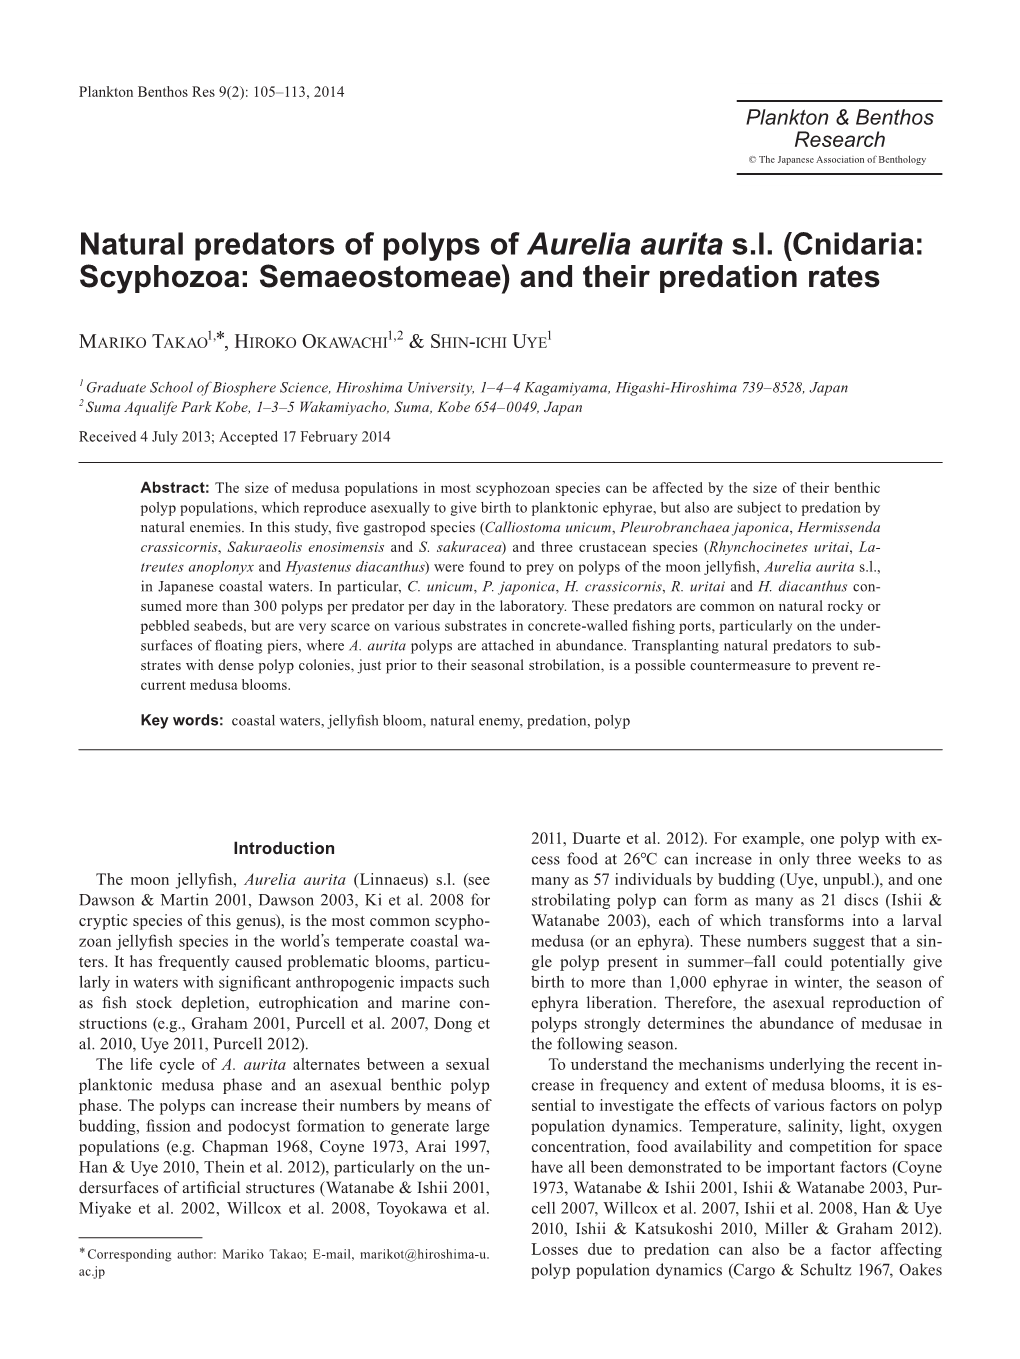 Natural Predators of Polyps of Aurelia Aurita Sl (Cnidaria: Scyphozoa